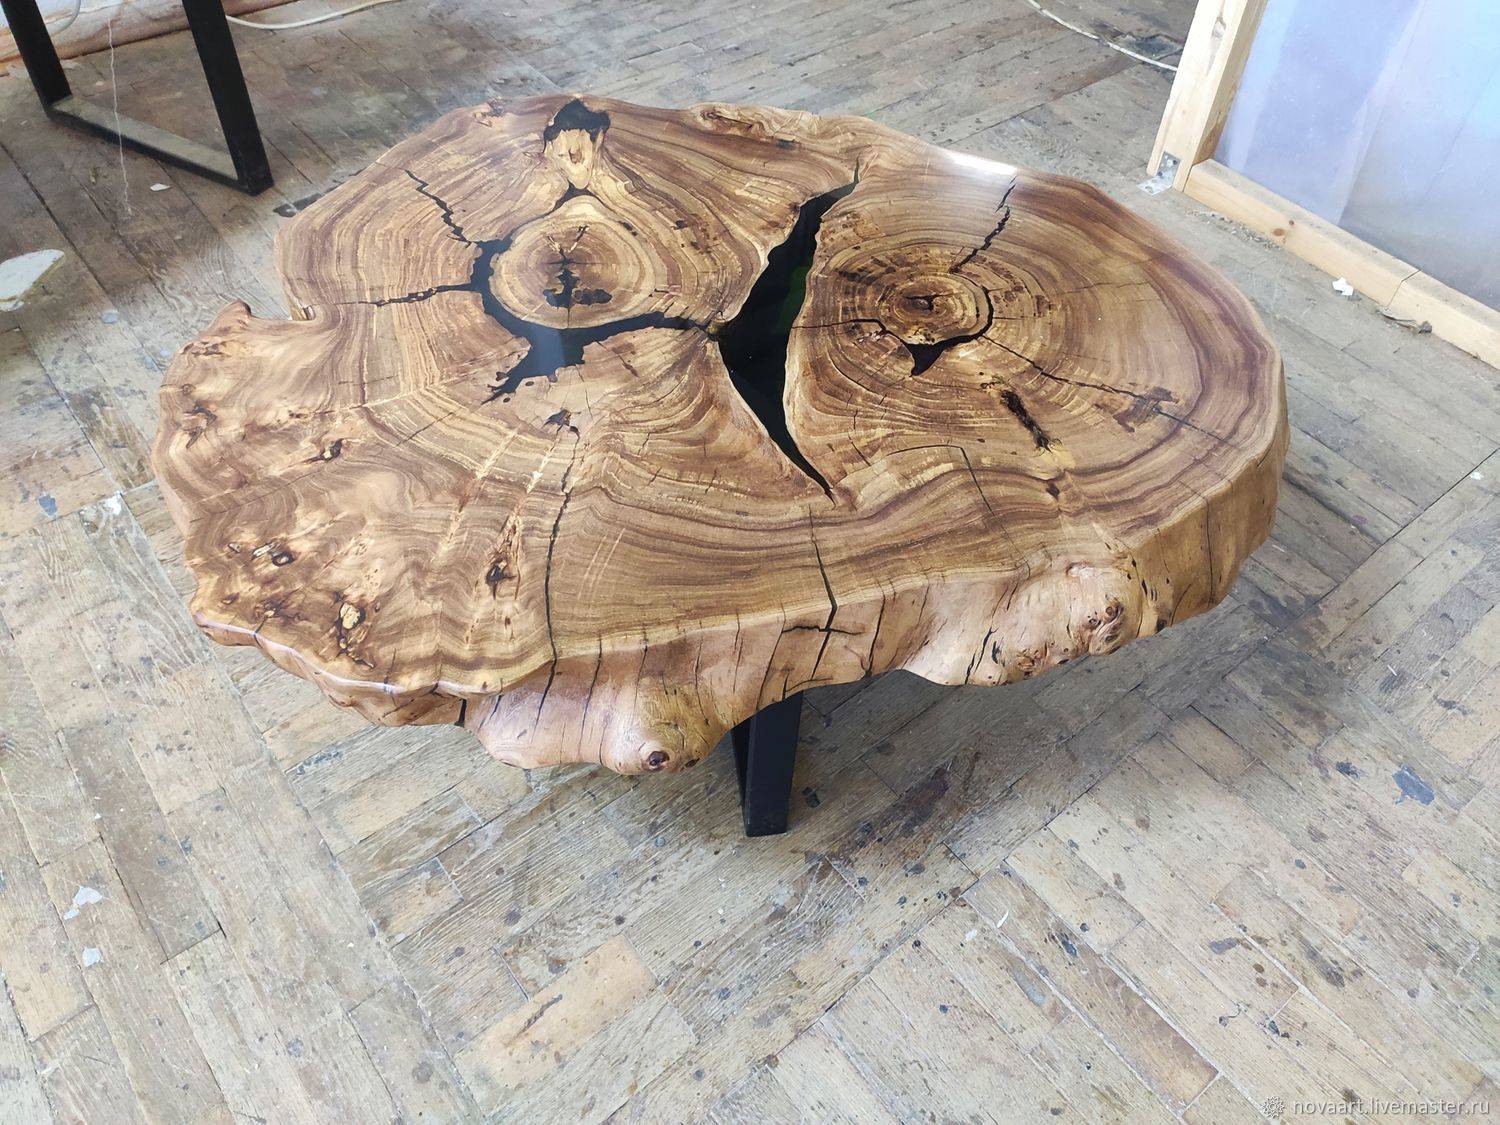 Как сделать своими руками стол из дерева с круглой или прямоугольной столешницей, применяя доски, брус и другие материалы